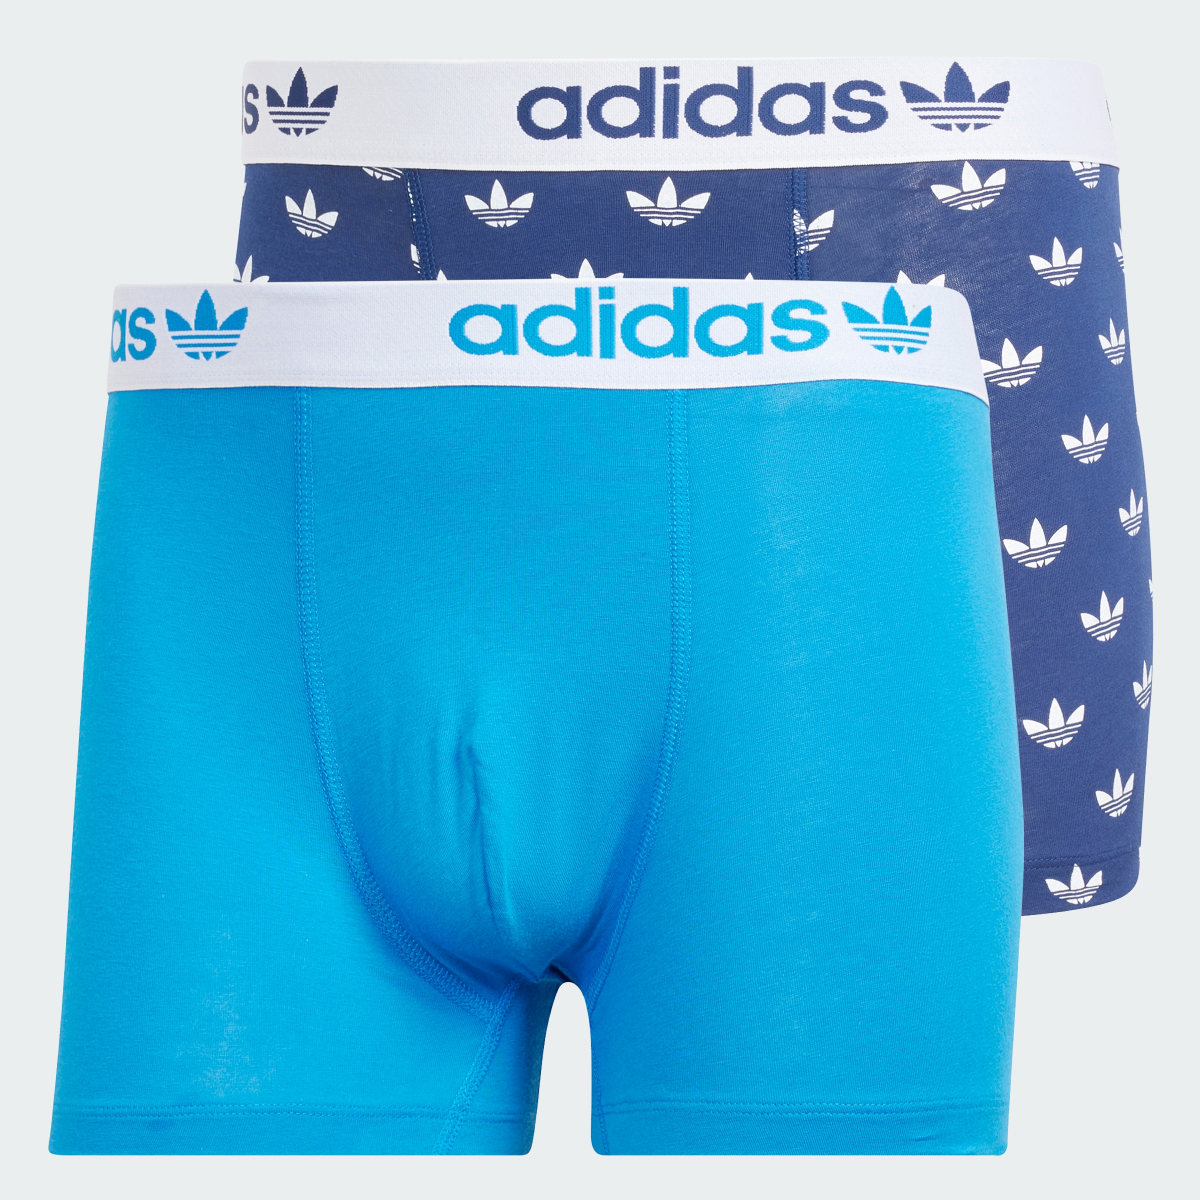 Adidas Comfort Flex Cotton Trunk Underwear 2 Pack. 5